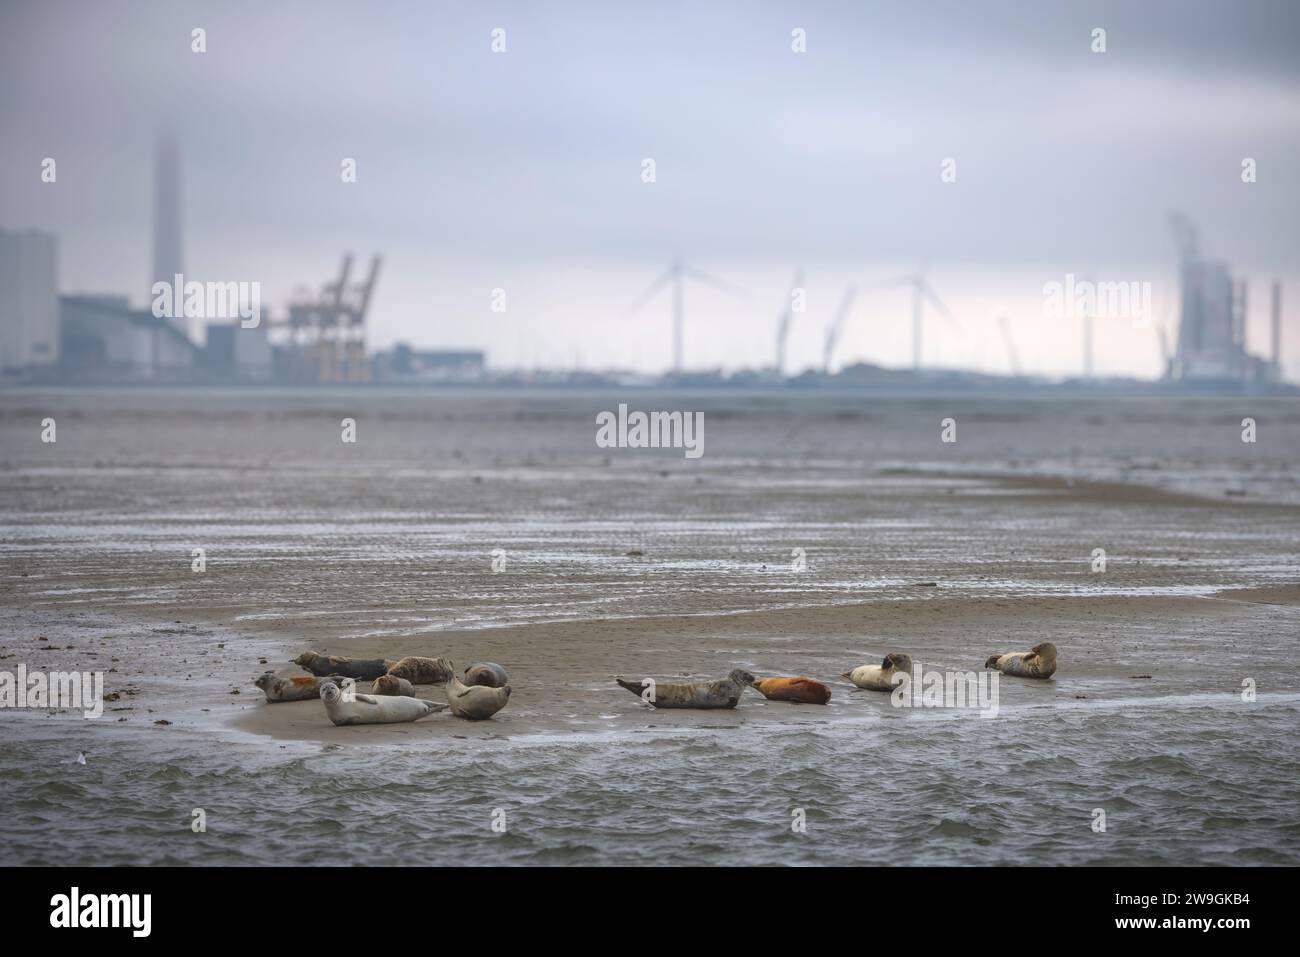 Bob de las focas descansando en el banco de arena en la isla de Fano, con el puerto de Esbjerg en el fondo, Dinamarca Foto de stock